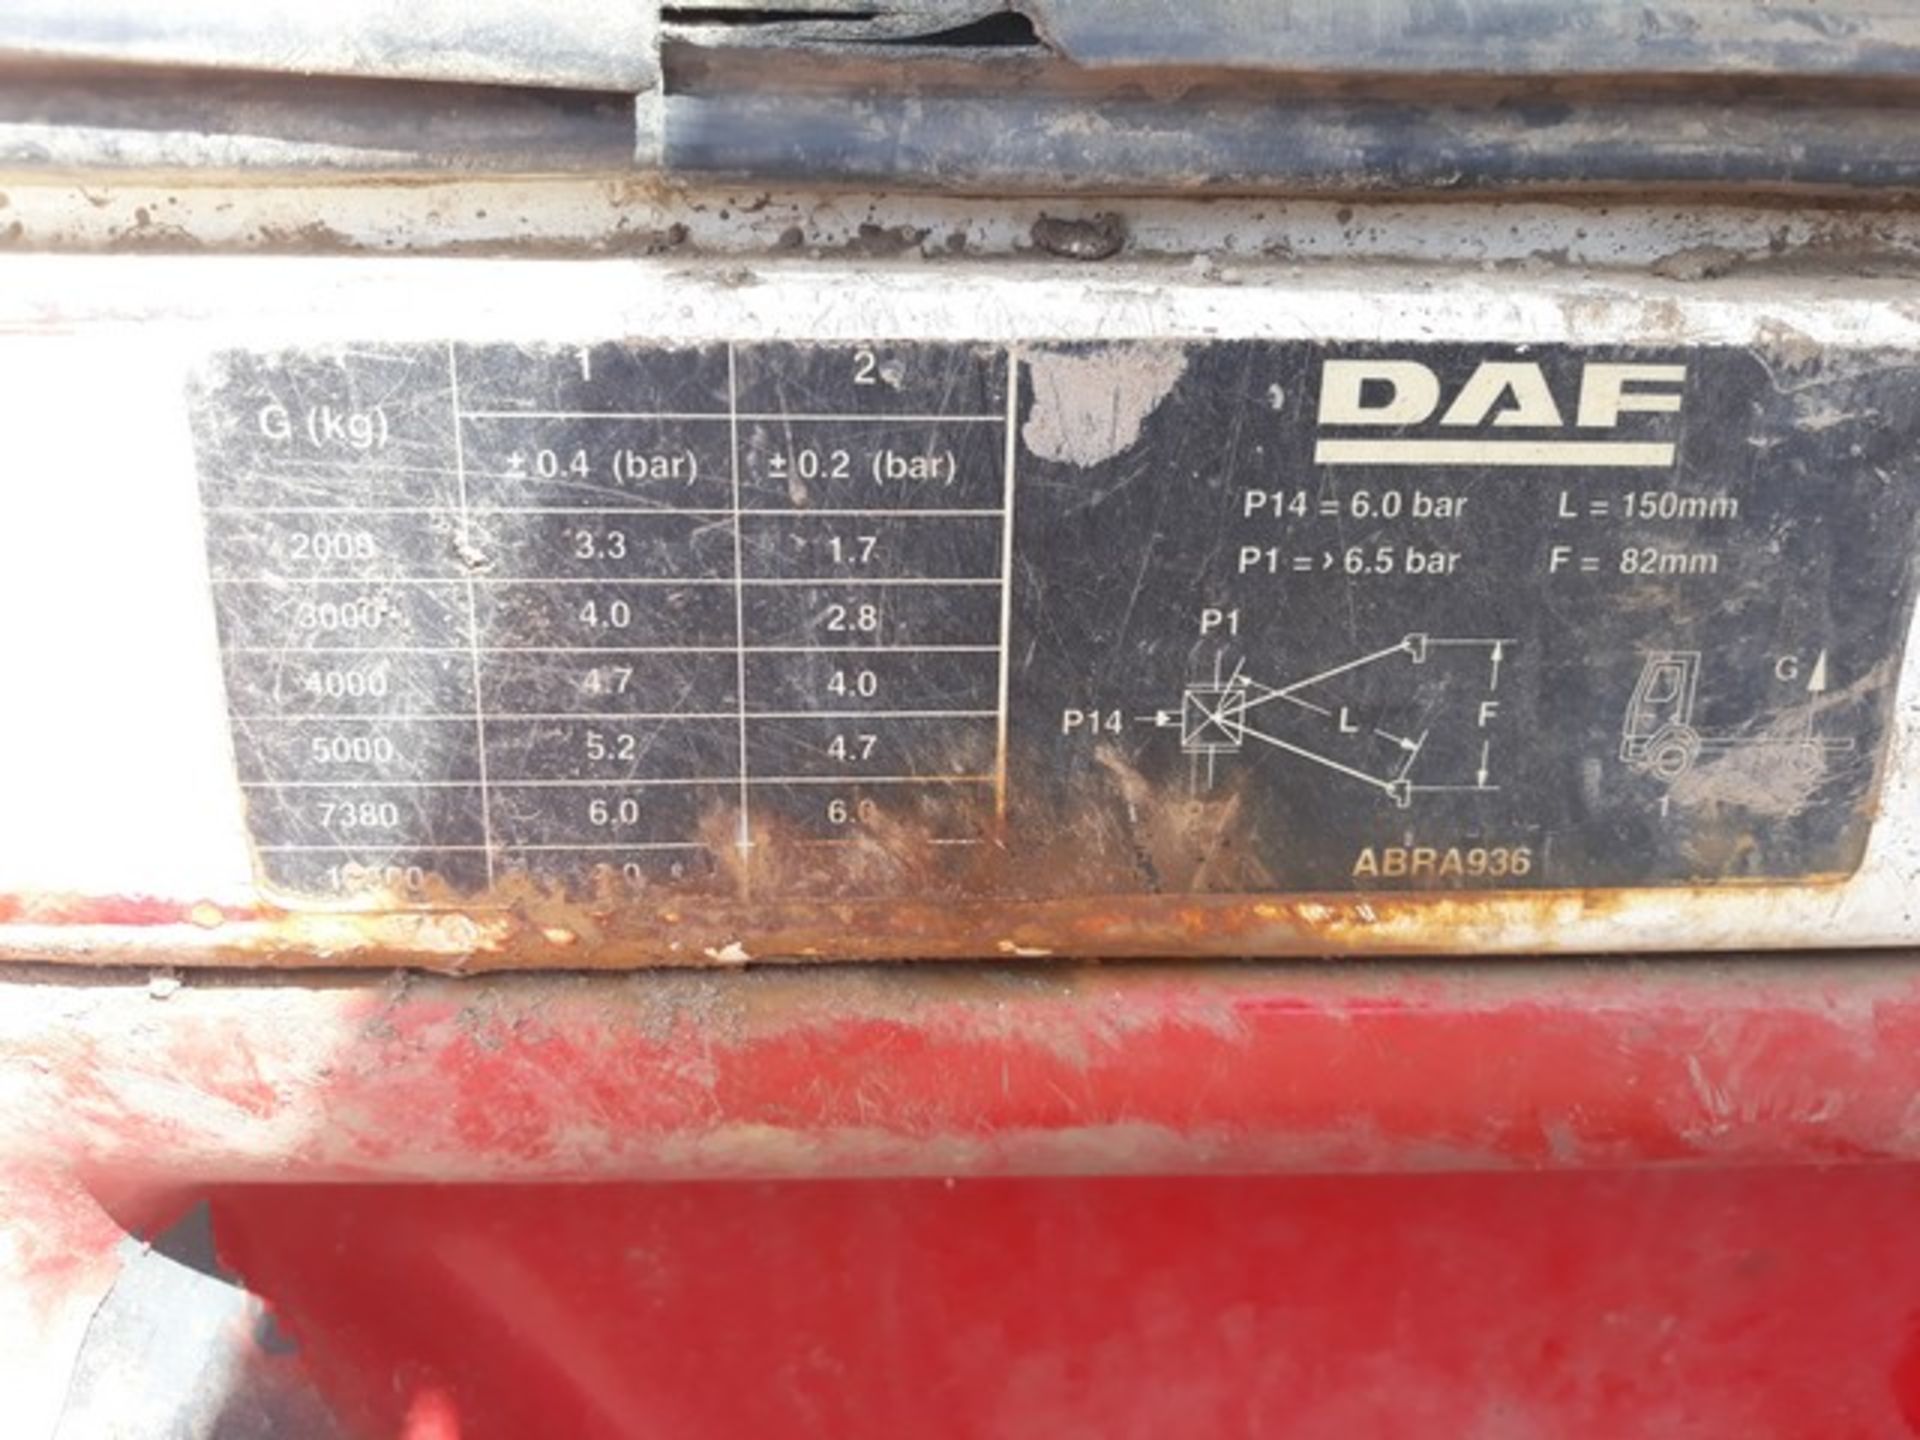 DAF TRUCKS FA LF55.220 - 5900cc - Image 8 of 30